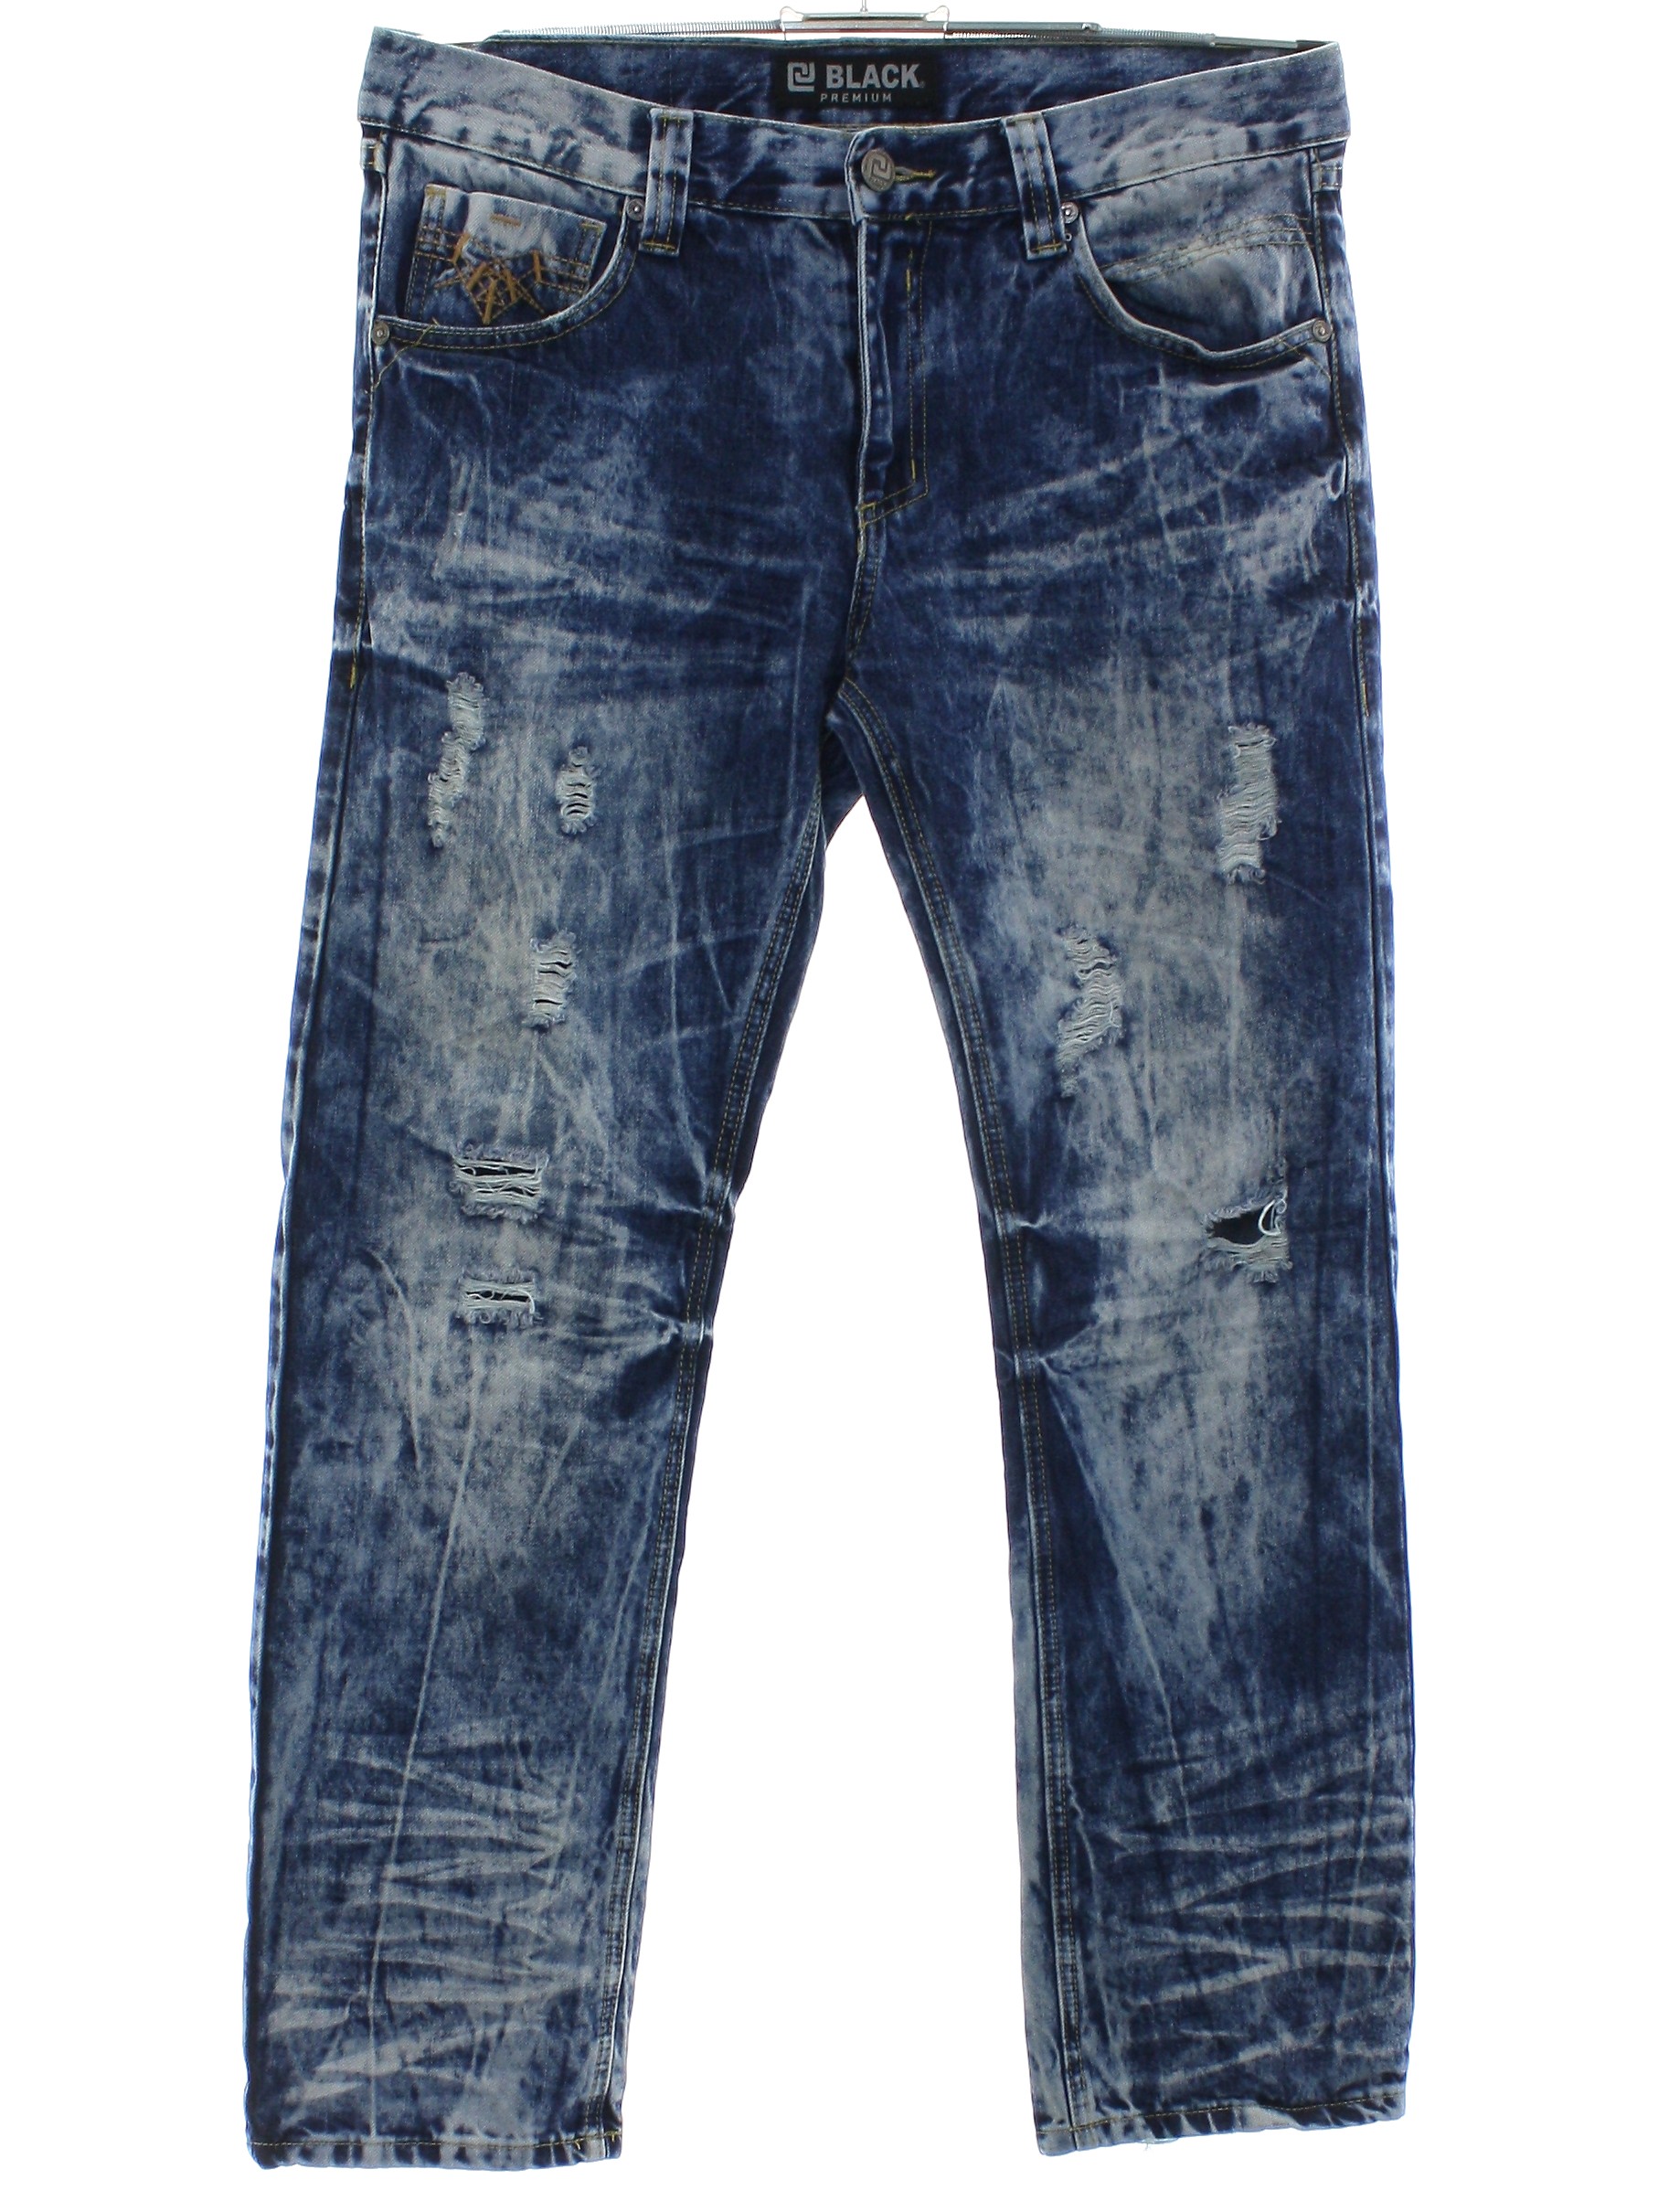 Pants: 90s (early y2k) -CJ Black Premium- Mens dark blue background